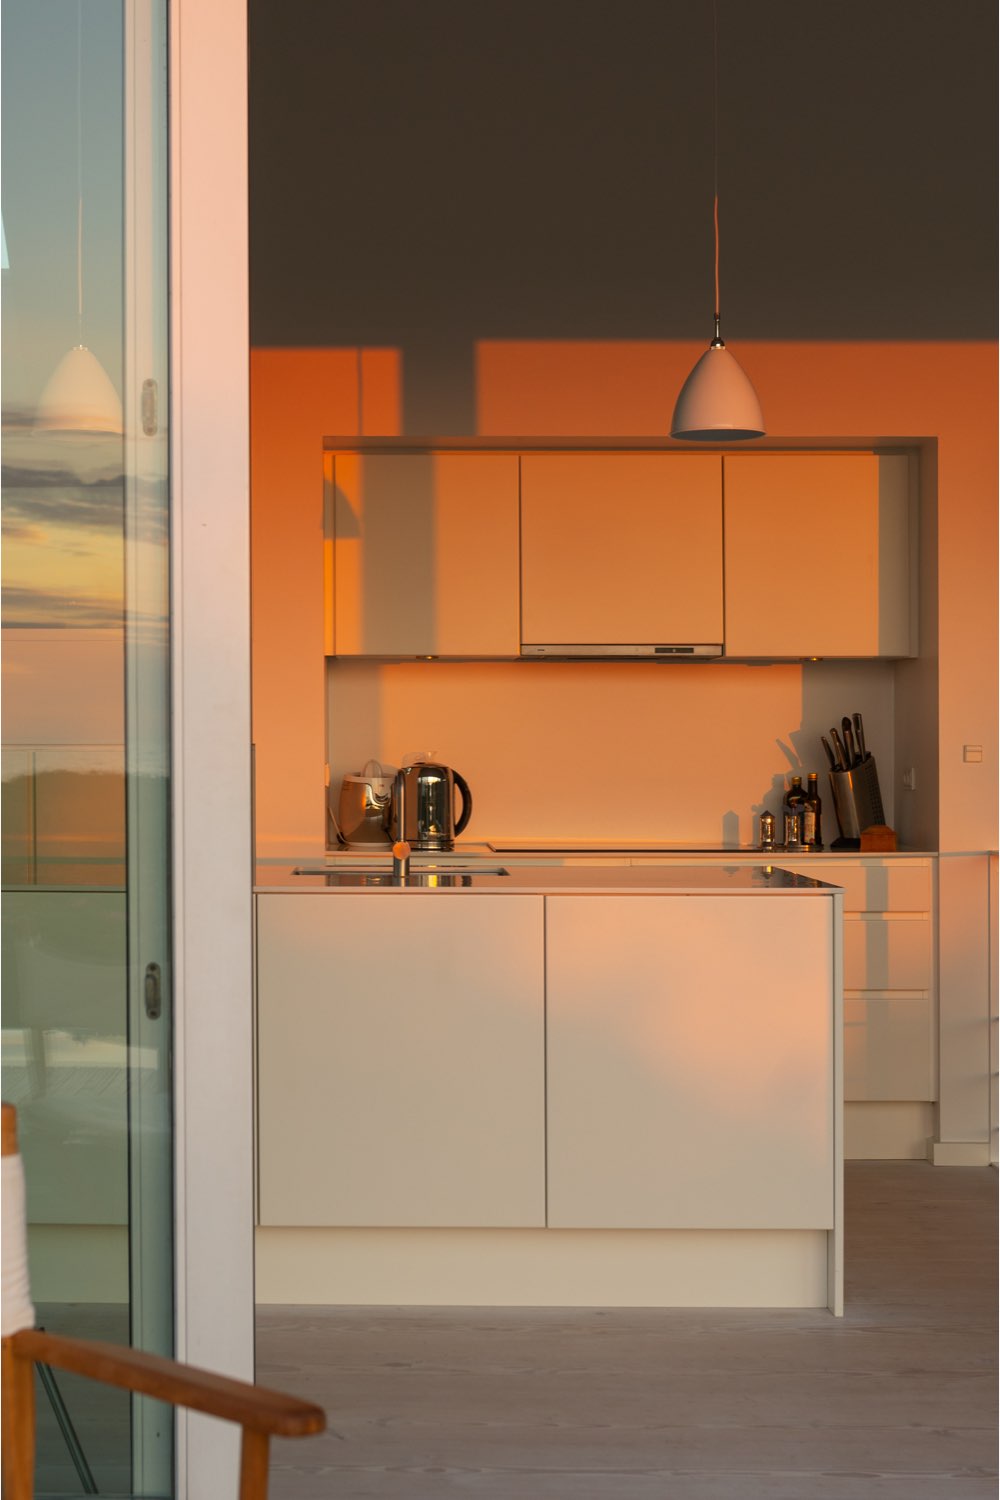 maison cotiere ultramoderne deco epuree cuisine éclairage naturel chaleureux coucher de soleil ambiance chaude apaisante relaxante